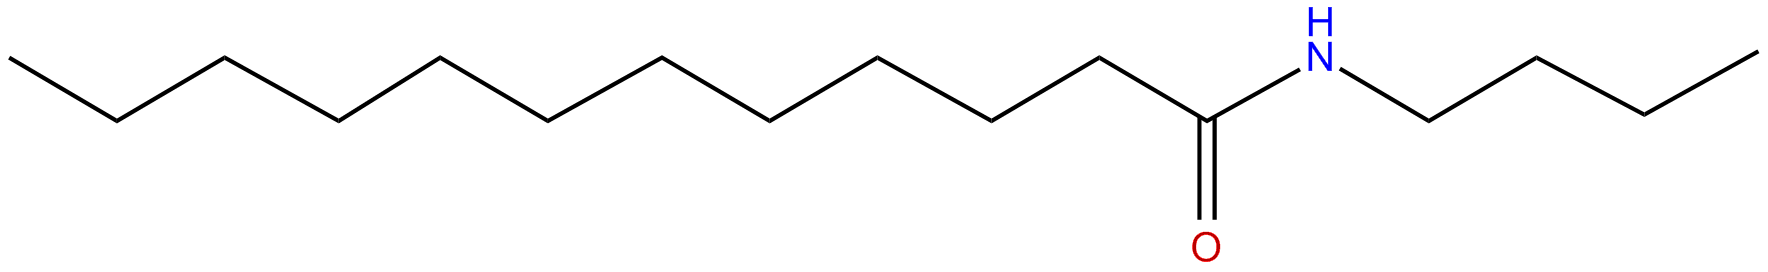 Image of N-butyldodecanamide